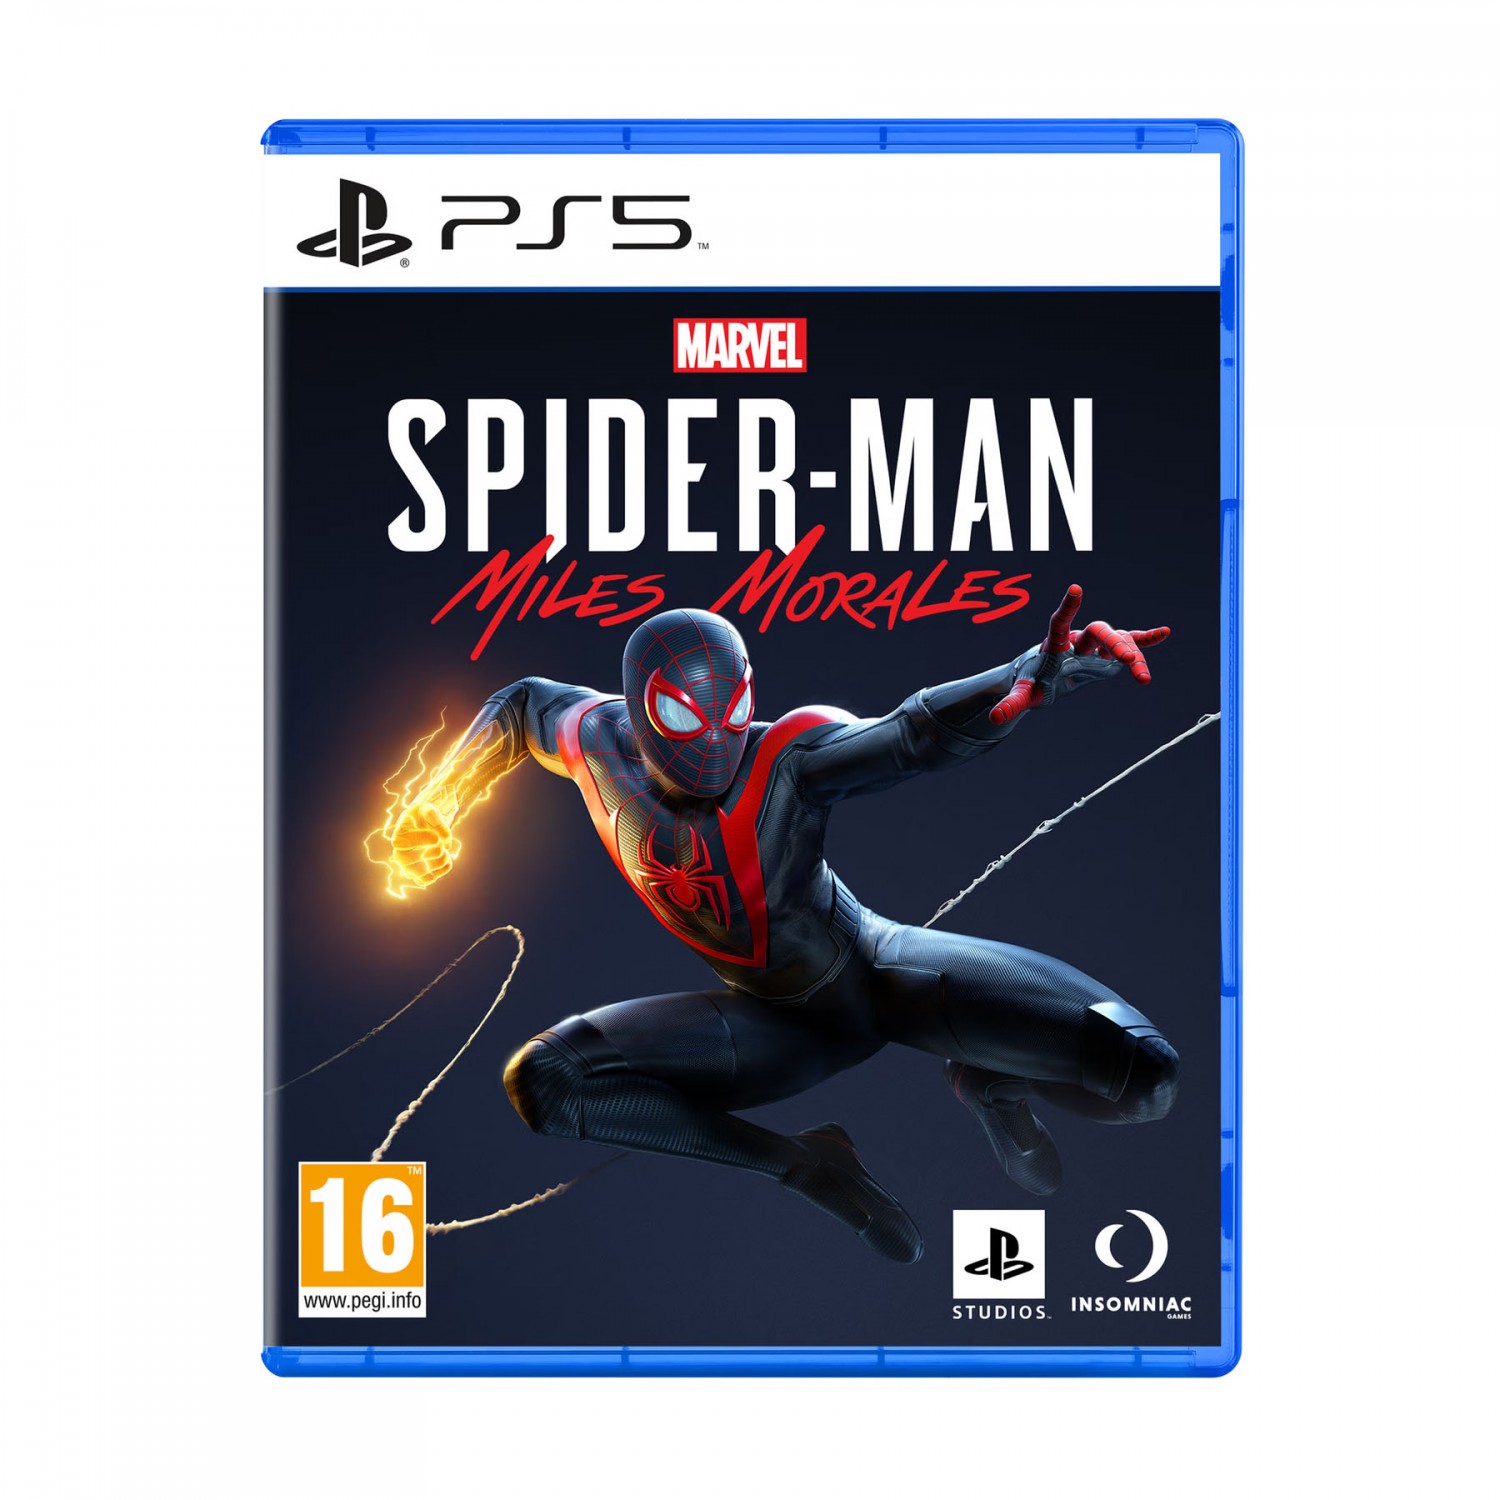 Ø¨Ø§Ø²ÛŒ SpiderMan: Miles Morales - PS5